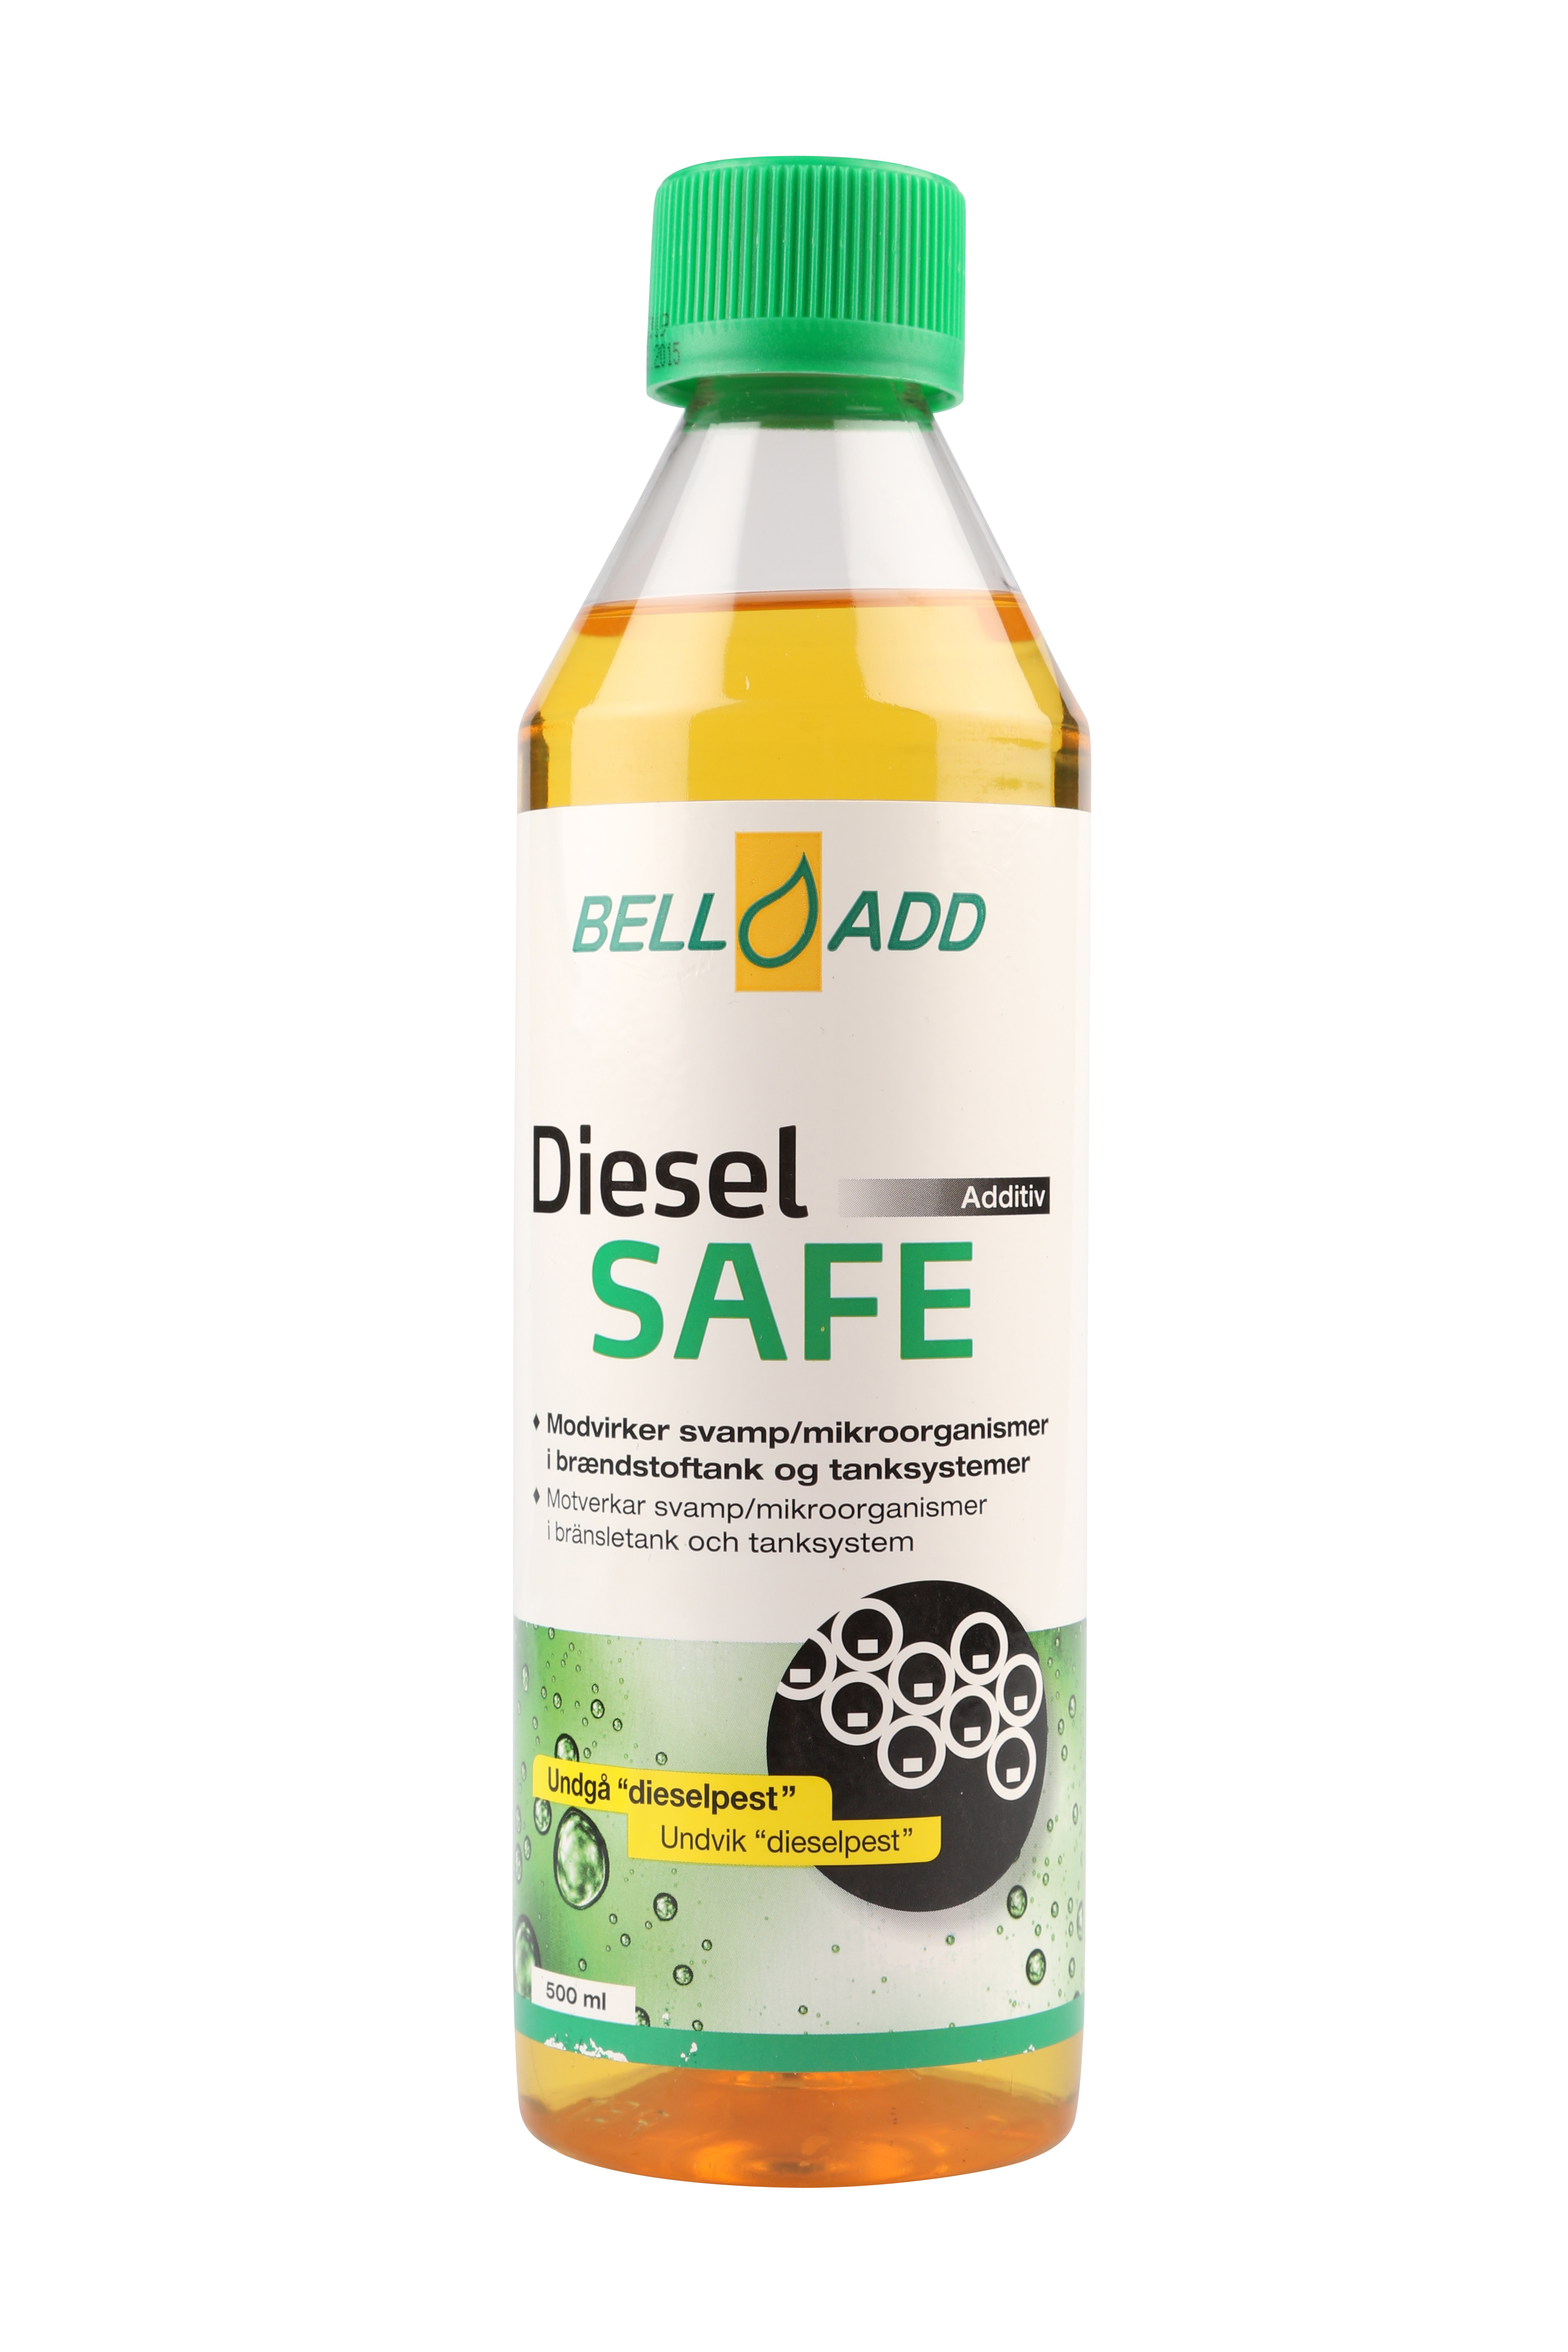 Bell Add Diesel Safe bruges til diesel biler - 500 ml.